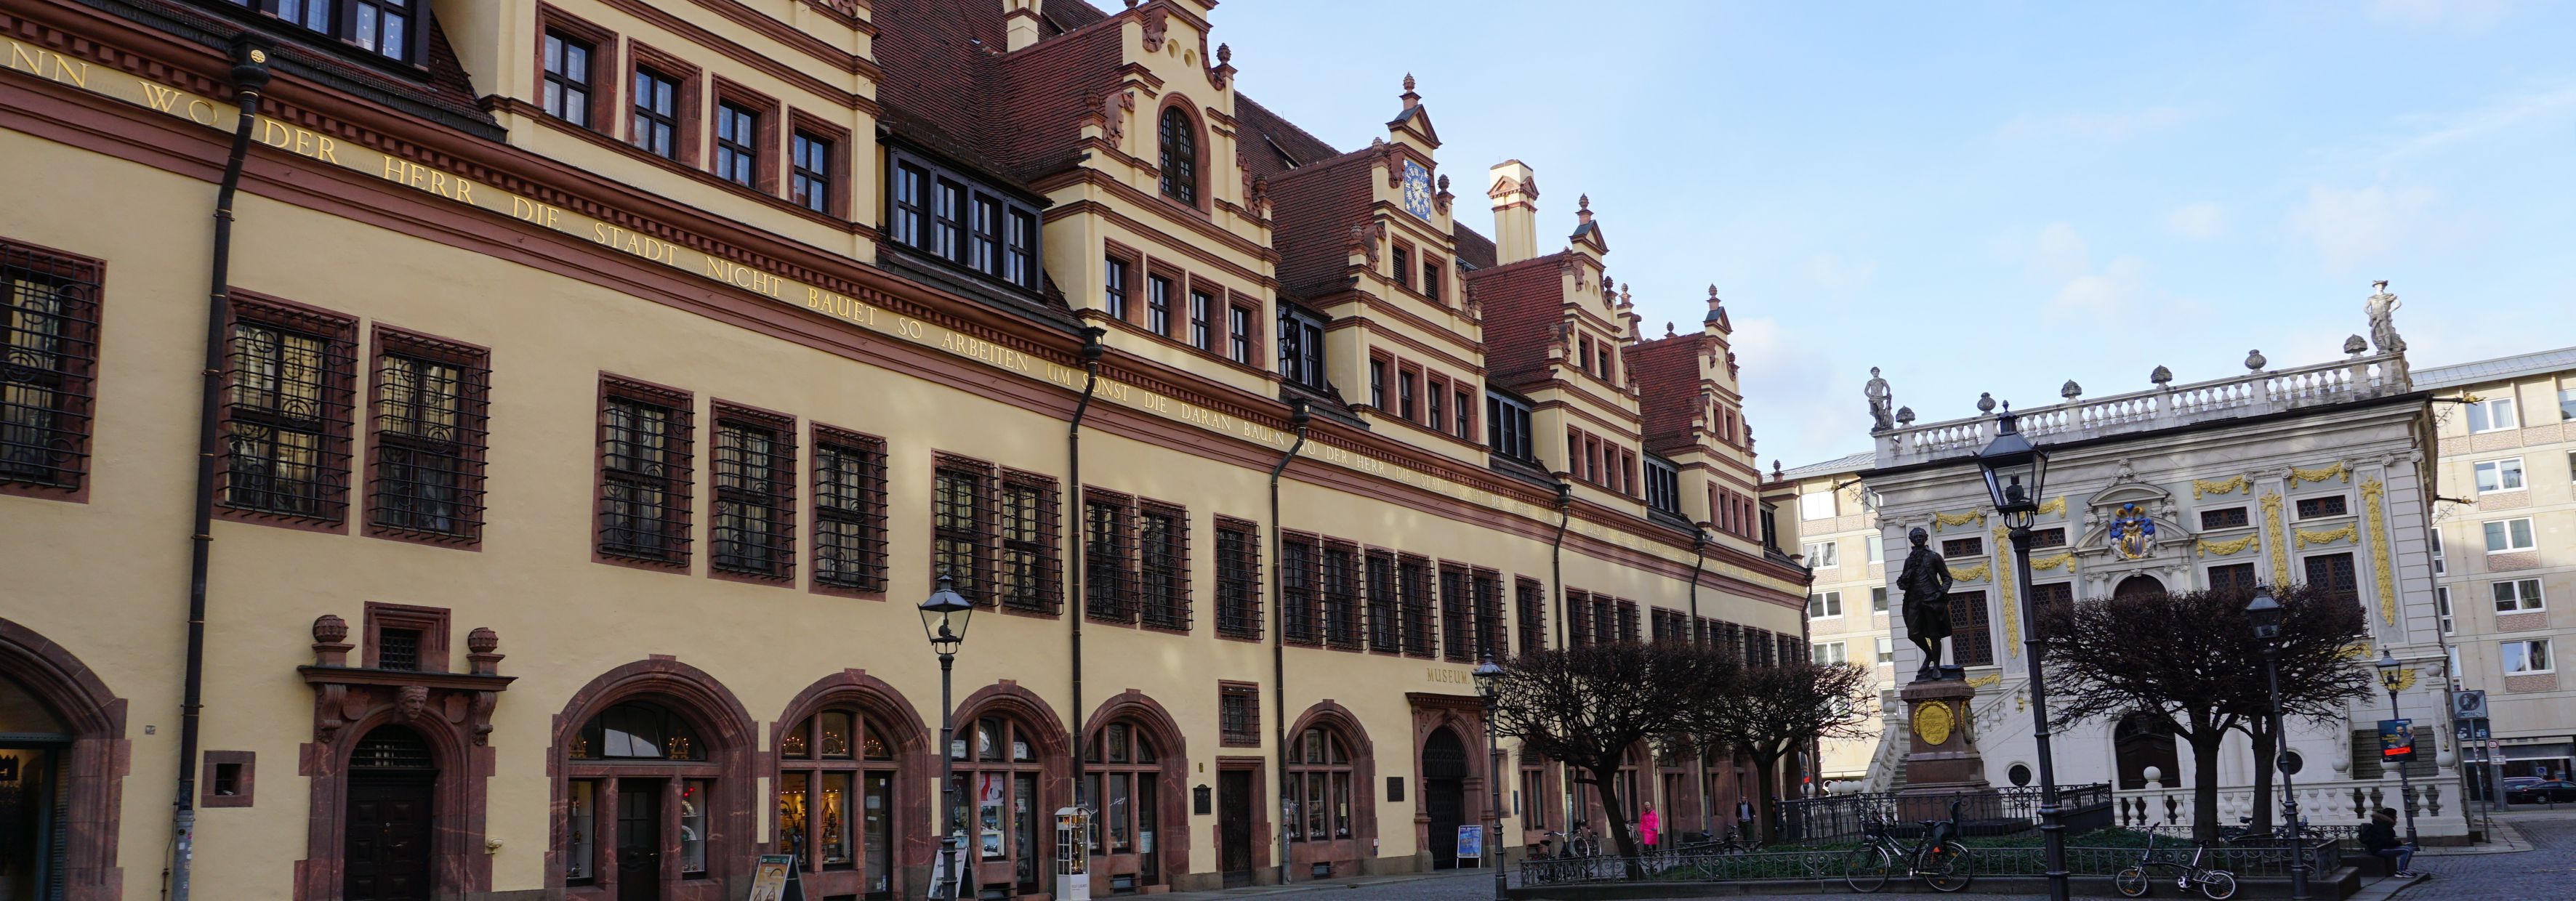 Altes Rathaus und Alte Handelsbörse, Leipzig